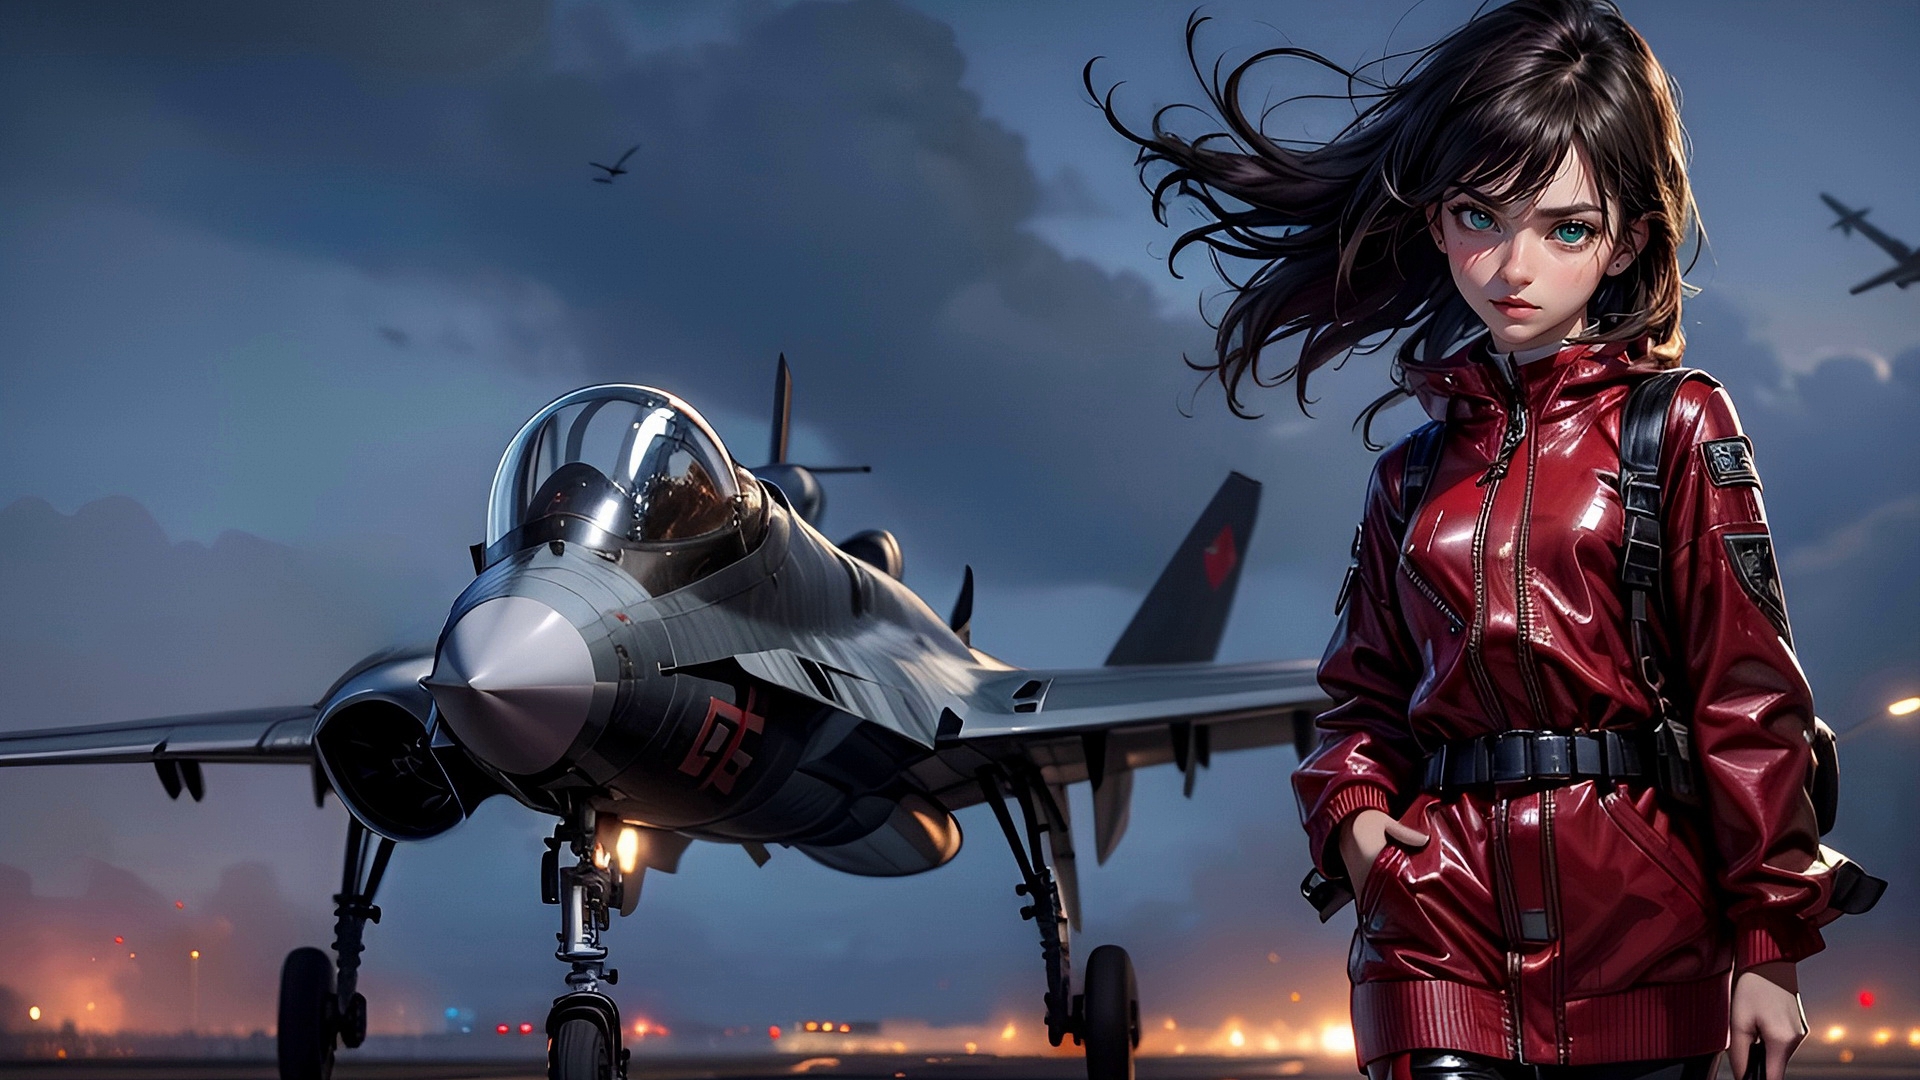 Бесплатное фото Девушка летчик на аэродроме и самолет